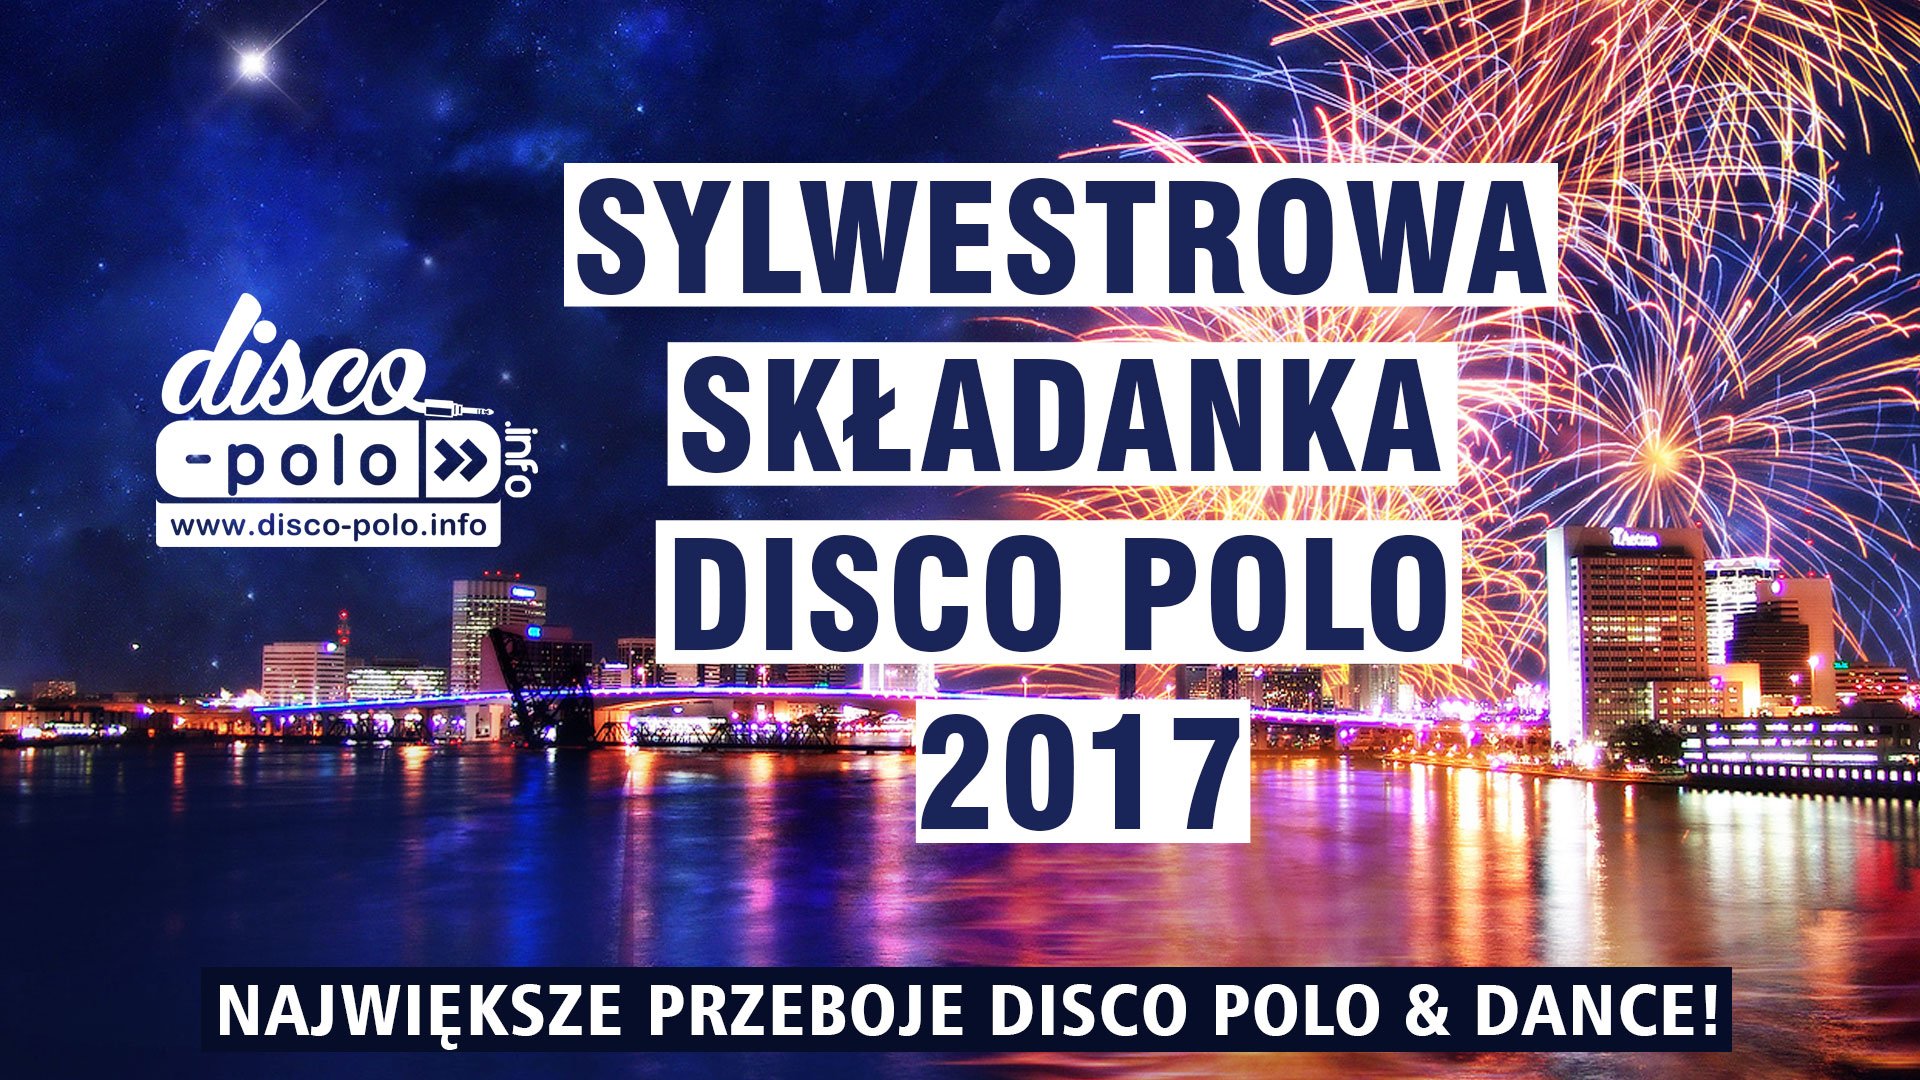 Sylwestrowa Składanka Disco Polo 2017 - Największe przeboje Disco Polo - Sylwester 2017/2018